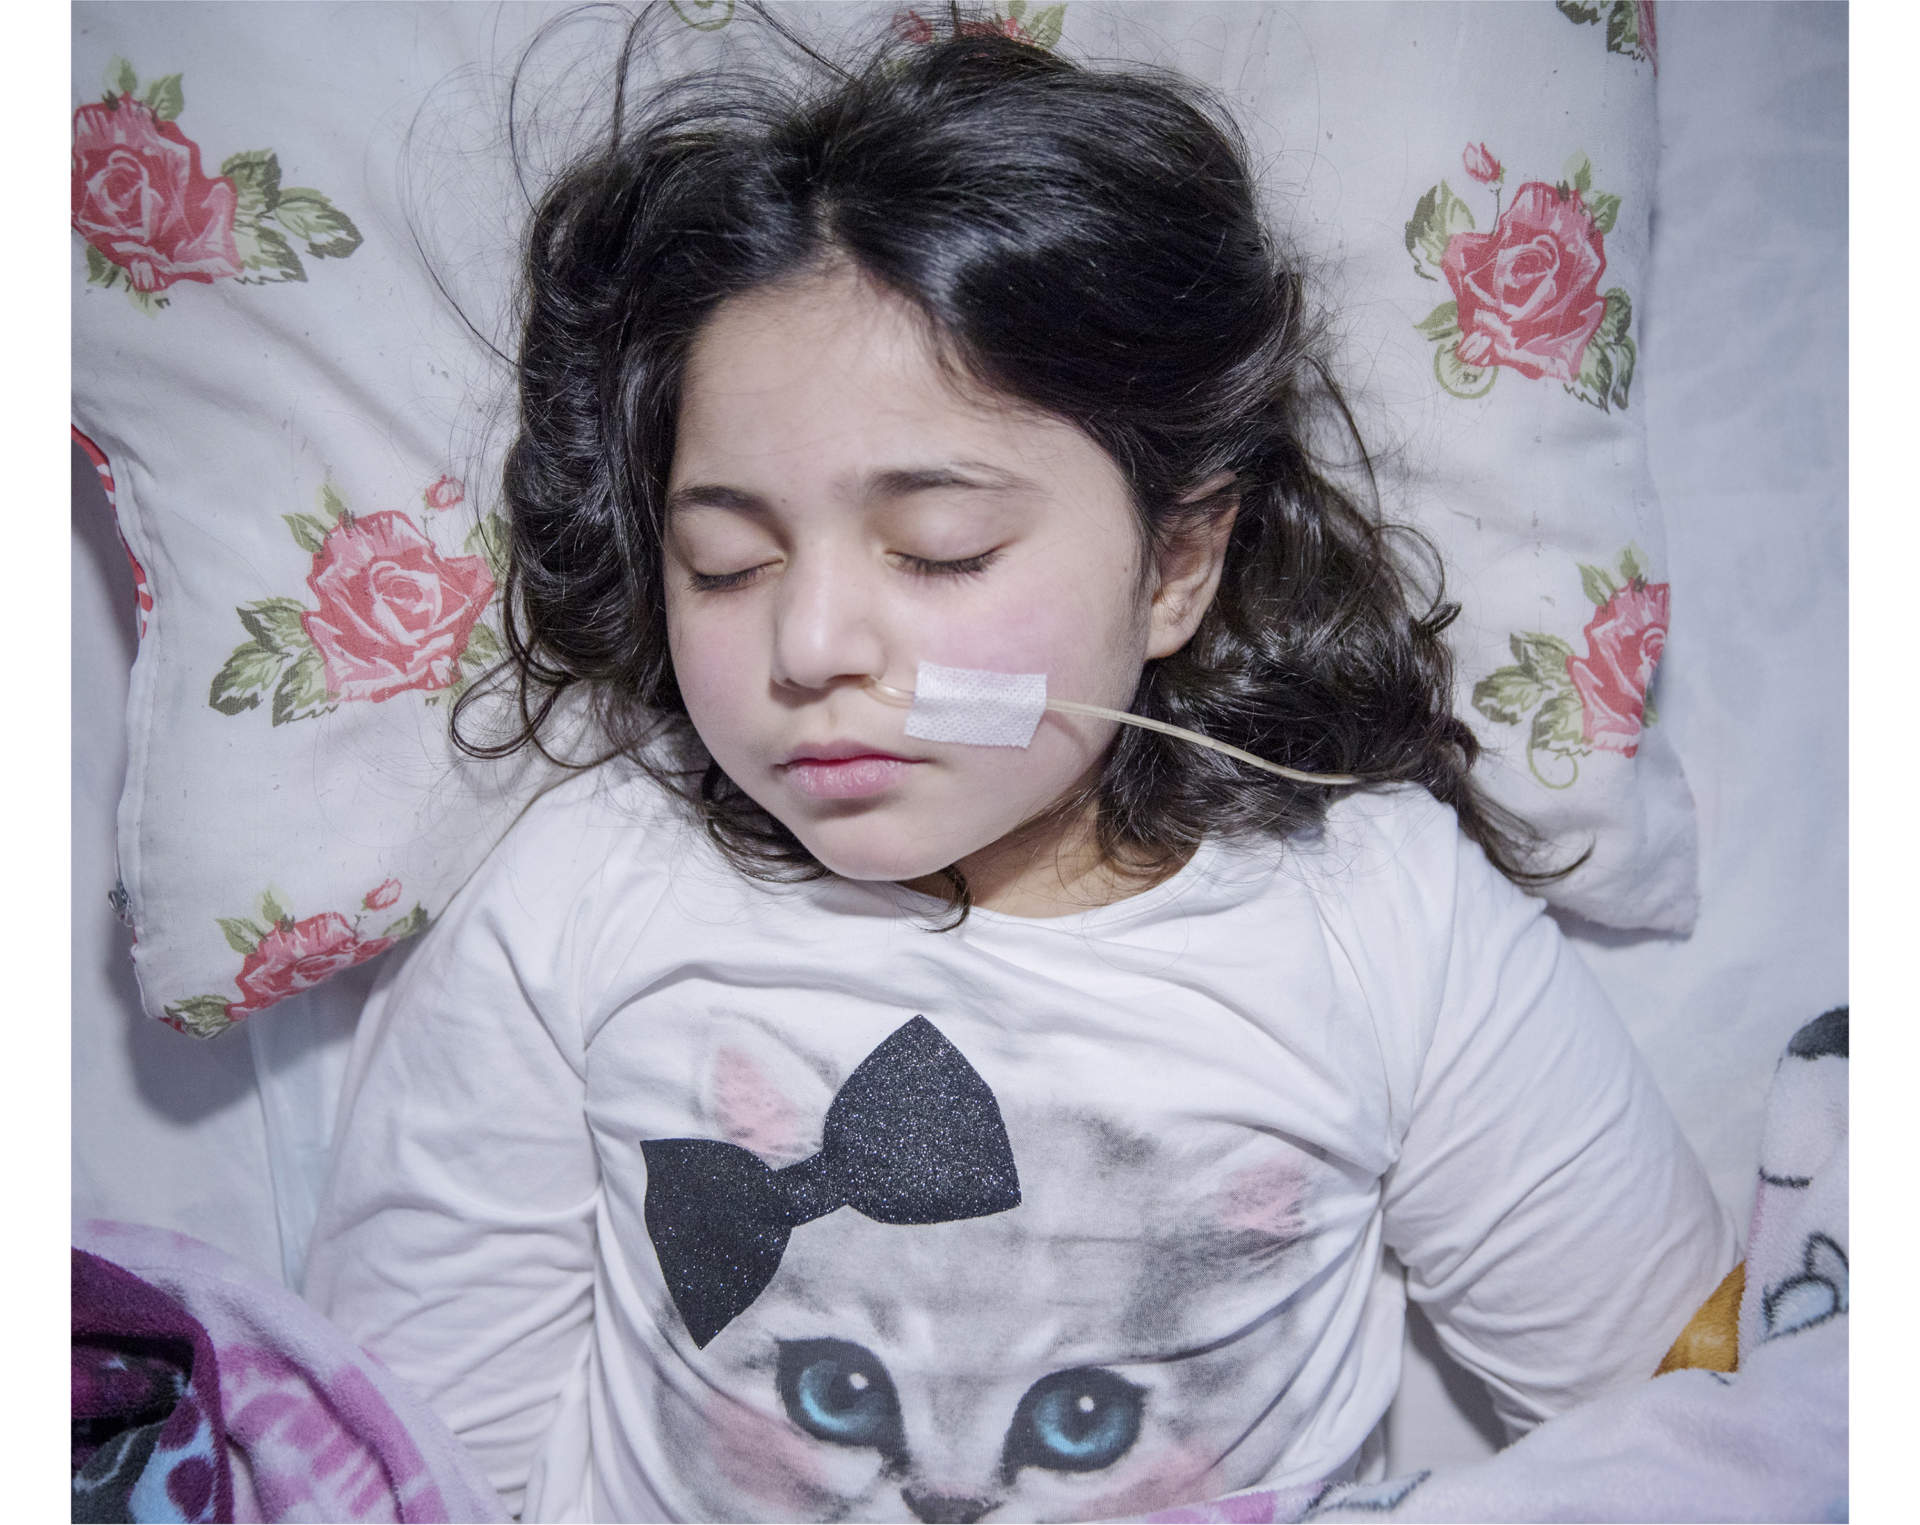 I Sverige har flera hundra immigrantbarn vars familjer riskerar utvisning drabbats av uppgivenhetssyndrom, ett förbryllande tillstånd då barnet drar sig undan från omvärlden, inte ens reagerar på smärta och måste sondmatas, i vissa fall i flera år. ”Hon lider inte nu”, säger läkaren Elisabeth Hultcrantz om tioåriga Leyla Ahmed, som flytt från Syrien.